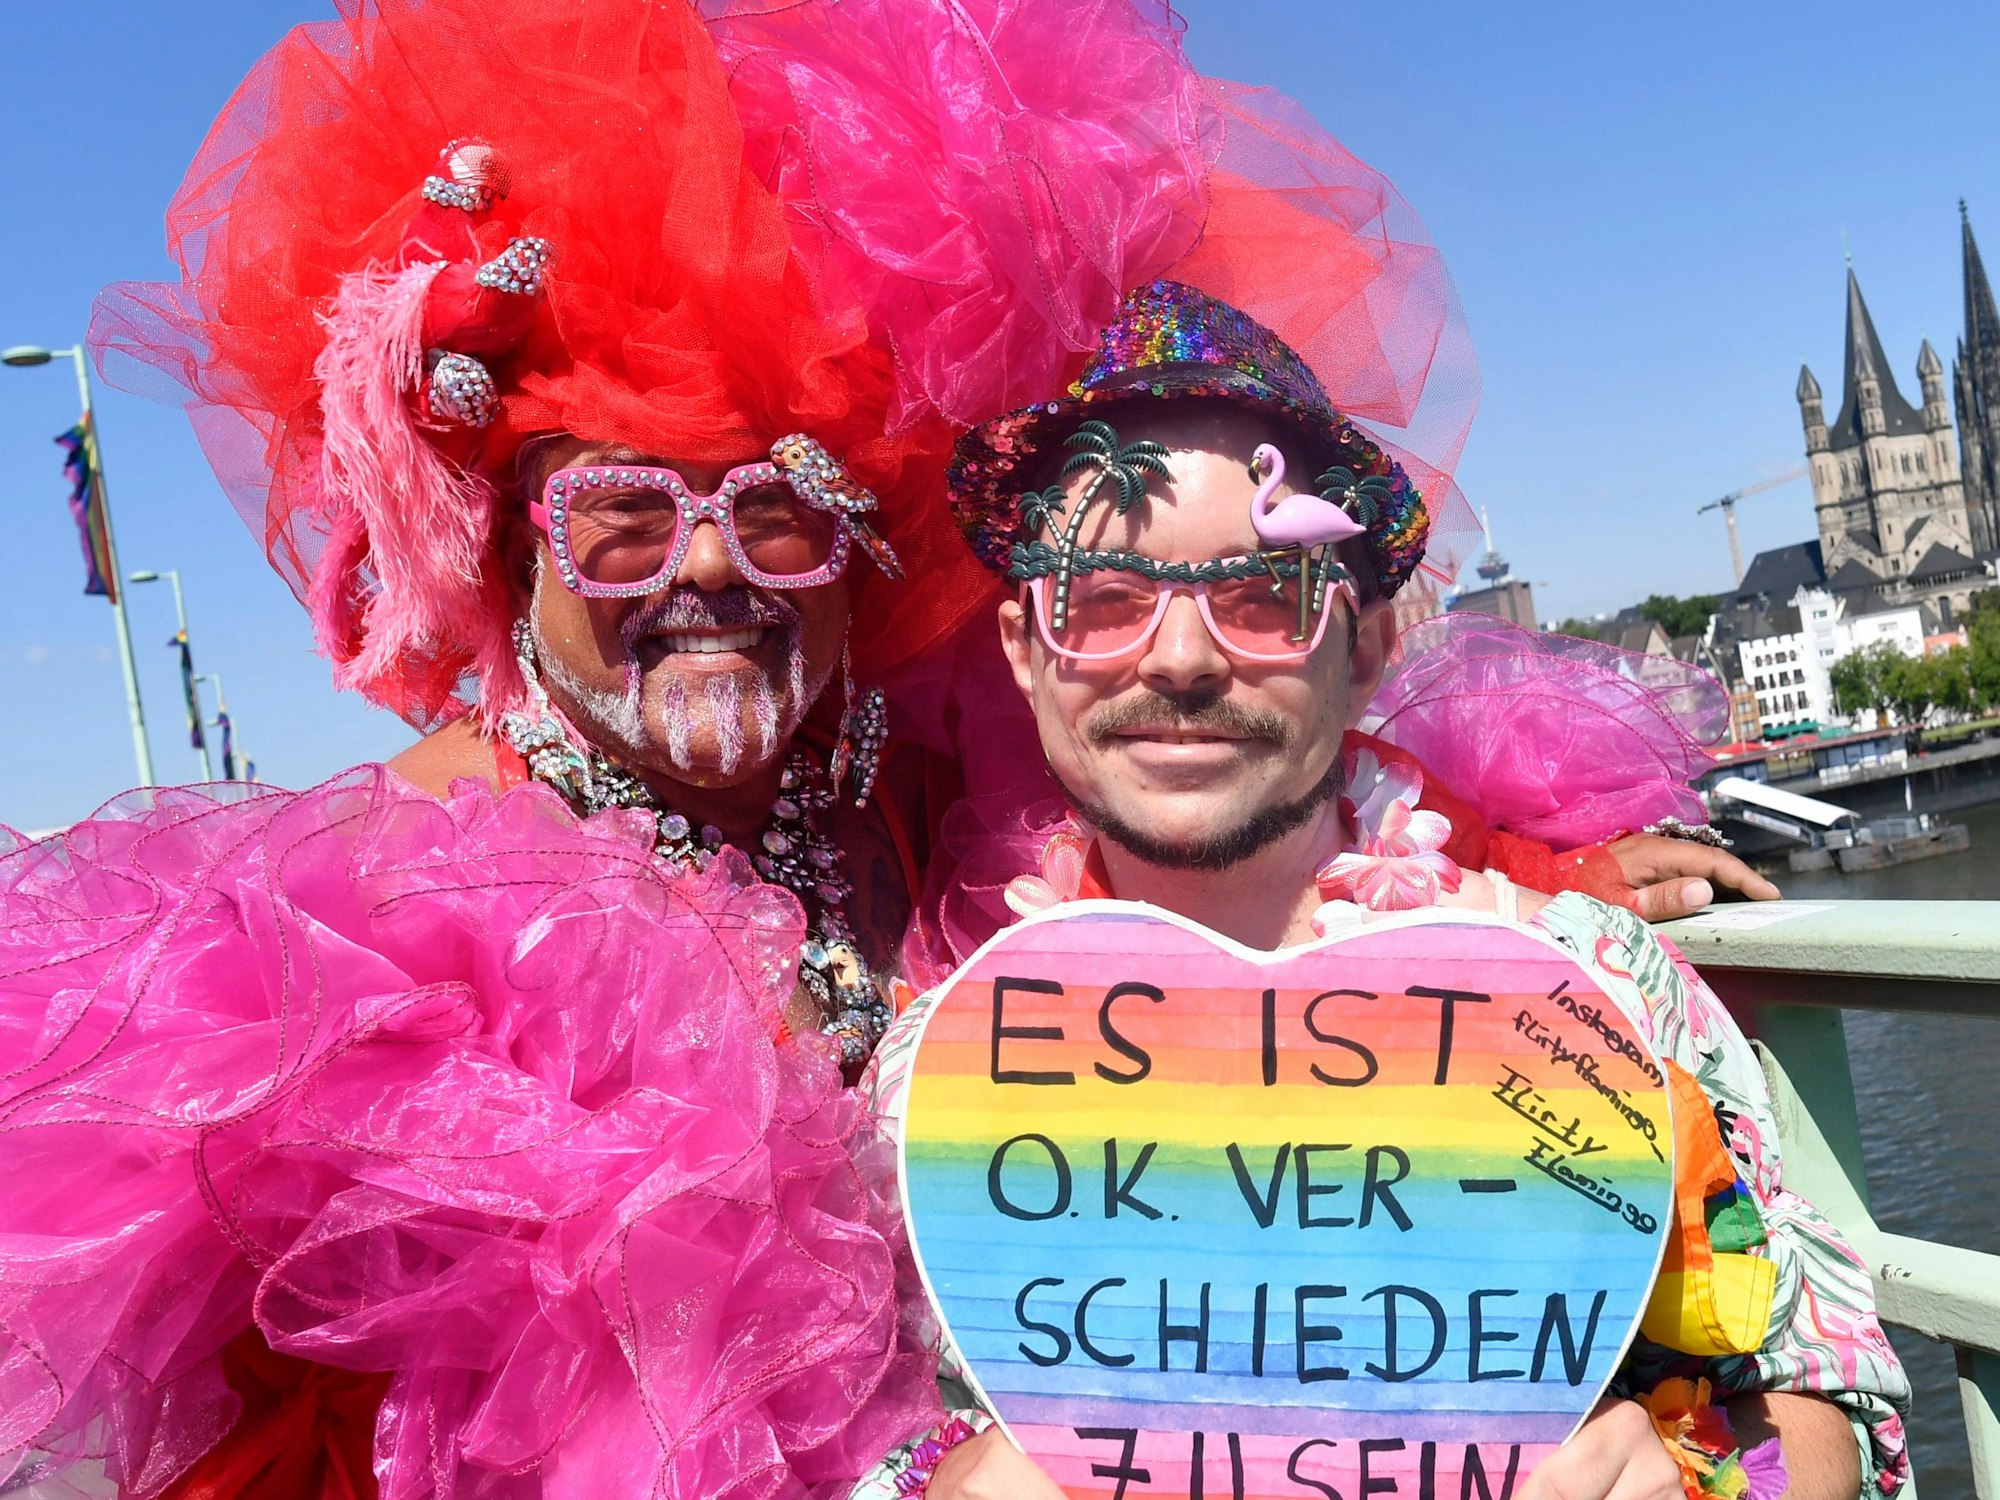 Zwei Menschen stehen in pinker Kleidung vor der Kamera und halten ihr Schild hoch. Im Hintergrund ist der Kölner Dom und Rhein zu sehen.